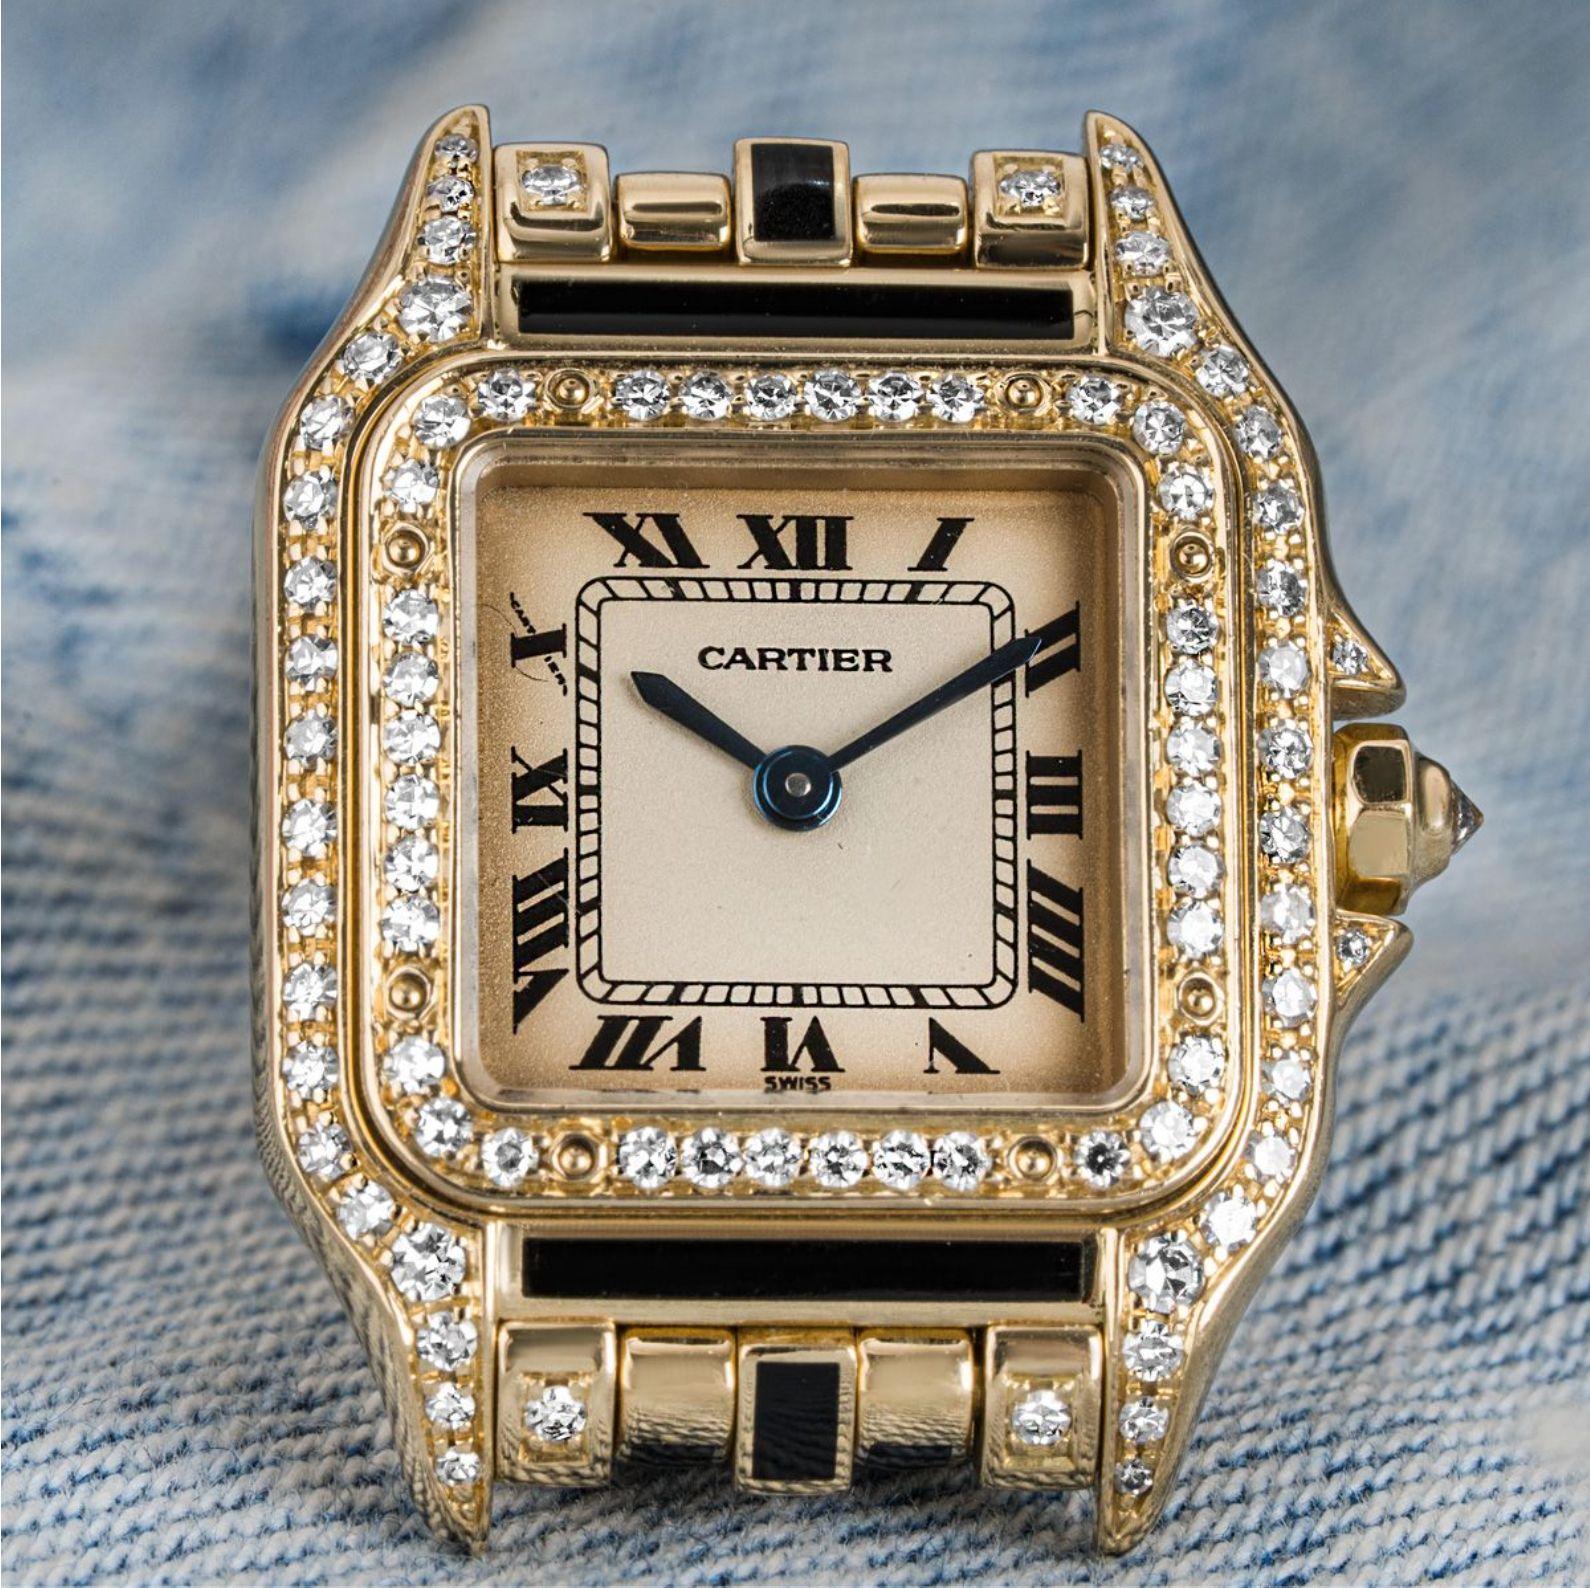 Eine Panthere-Armbanduhr aus Gelbgold für Damen. Sie verfügt über ein silbernes Zifferblatt mit römischen Ziffern, eine geheime Signatur bei X, schwertförmige Zeiger aus gebläutem Stahl und eine diamantbesetzte Lünette aus Gelbgold. Ausgestattet mit